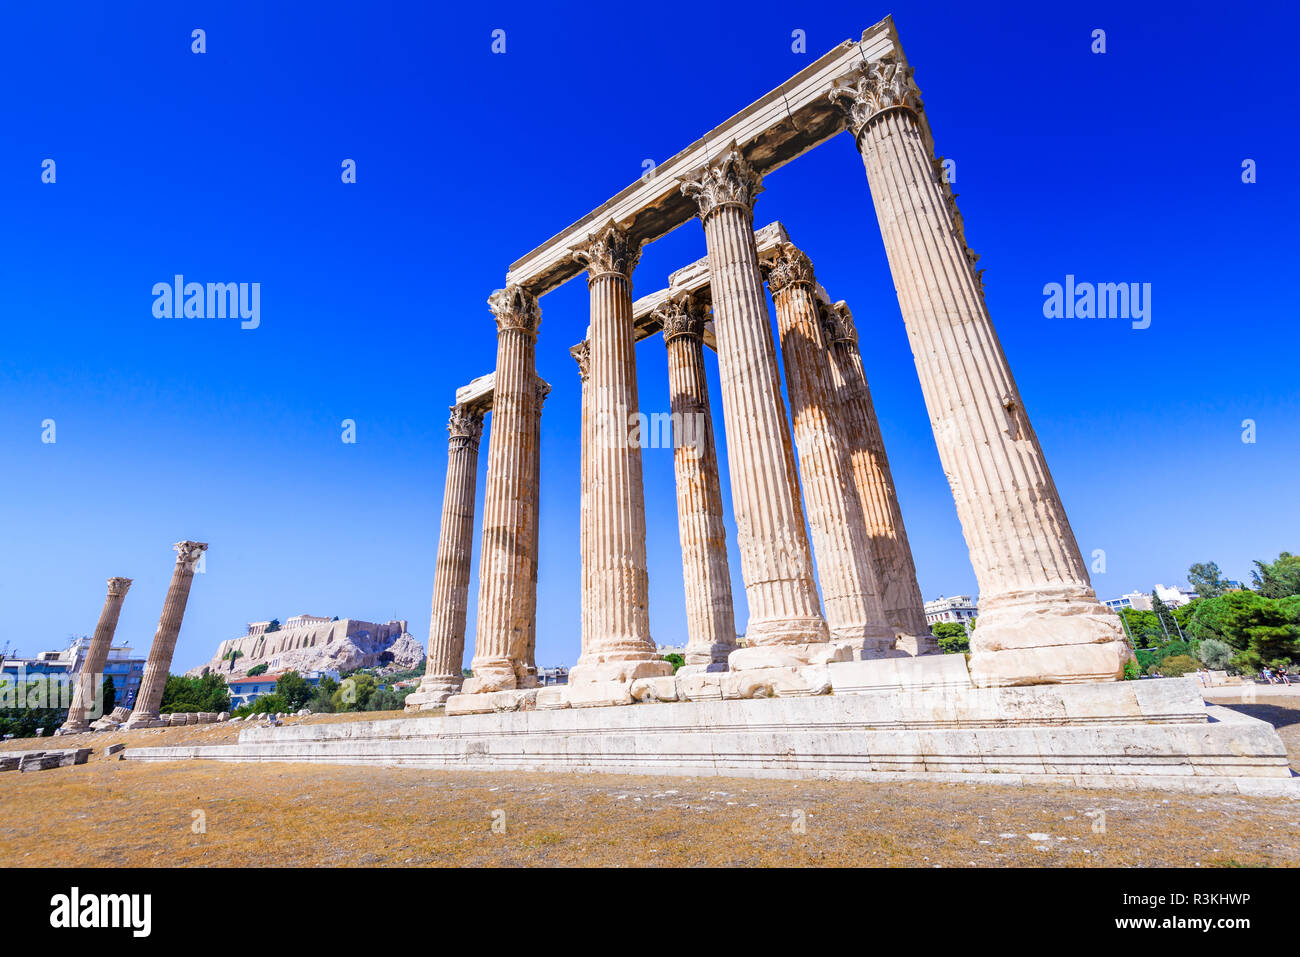 Athen, Griechenland - Tempel des Olympischen Zeus, das größte in der antiken griechischen Zivilisation, Olympieion. Stockfoto